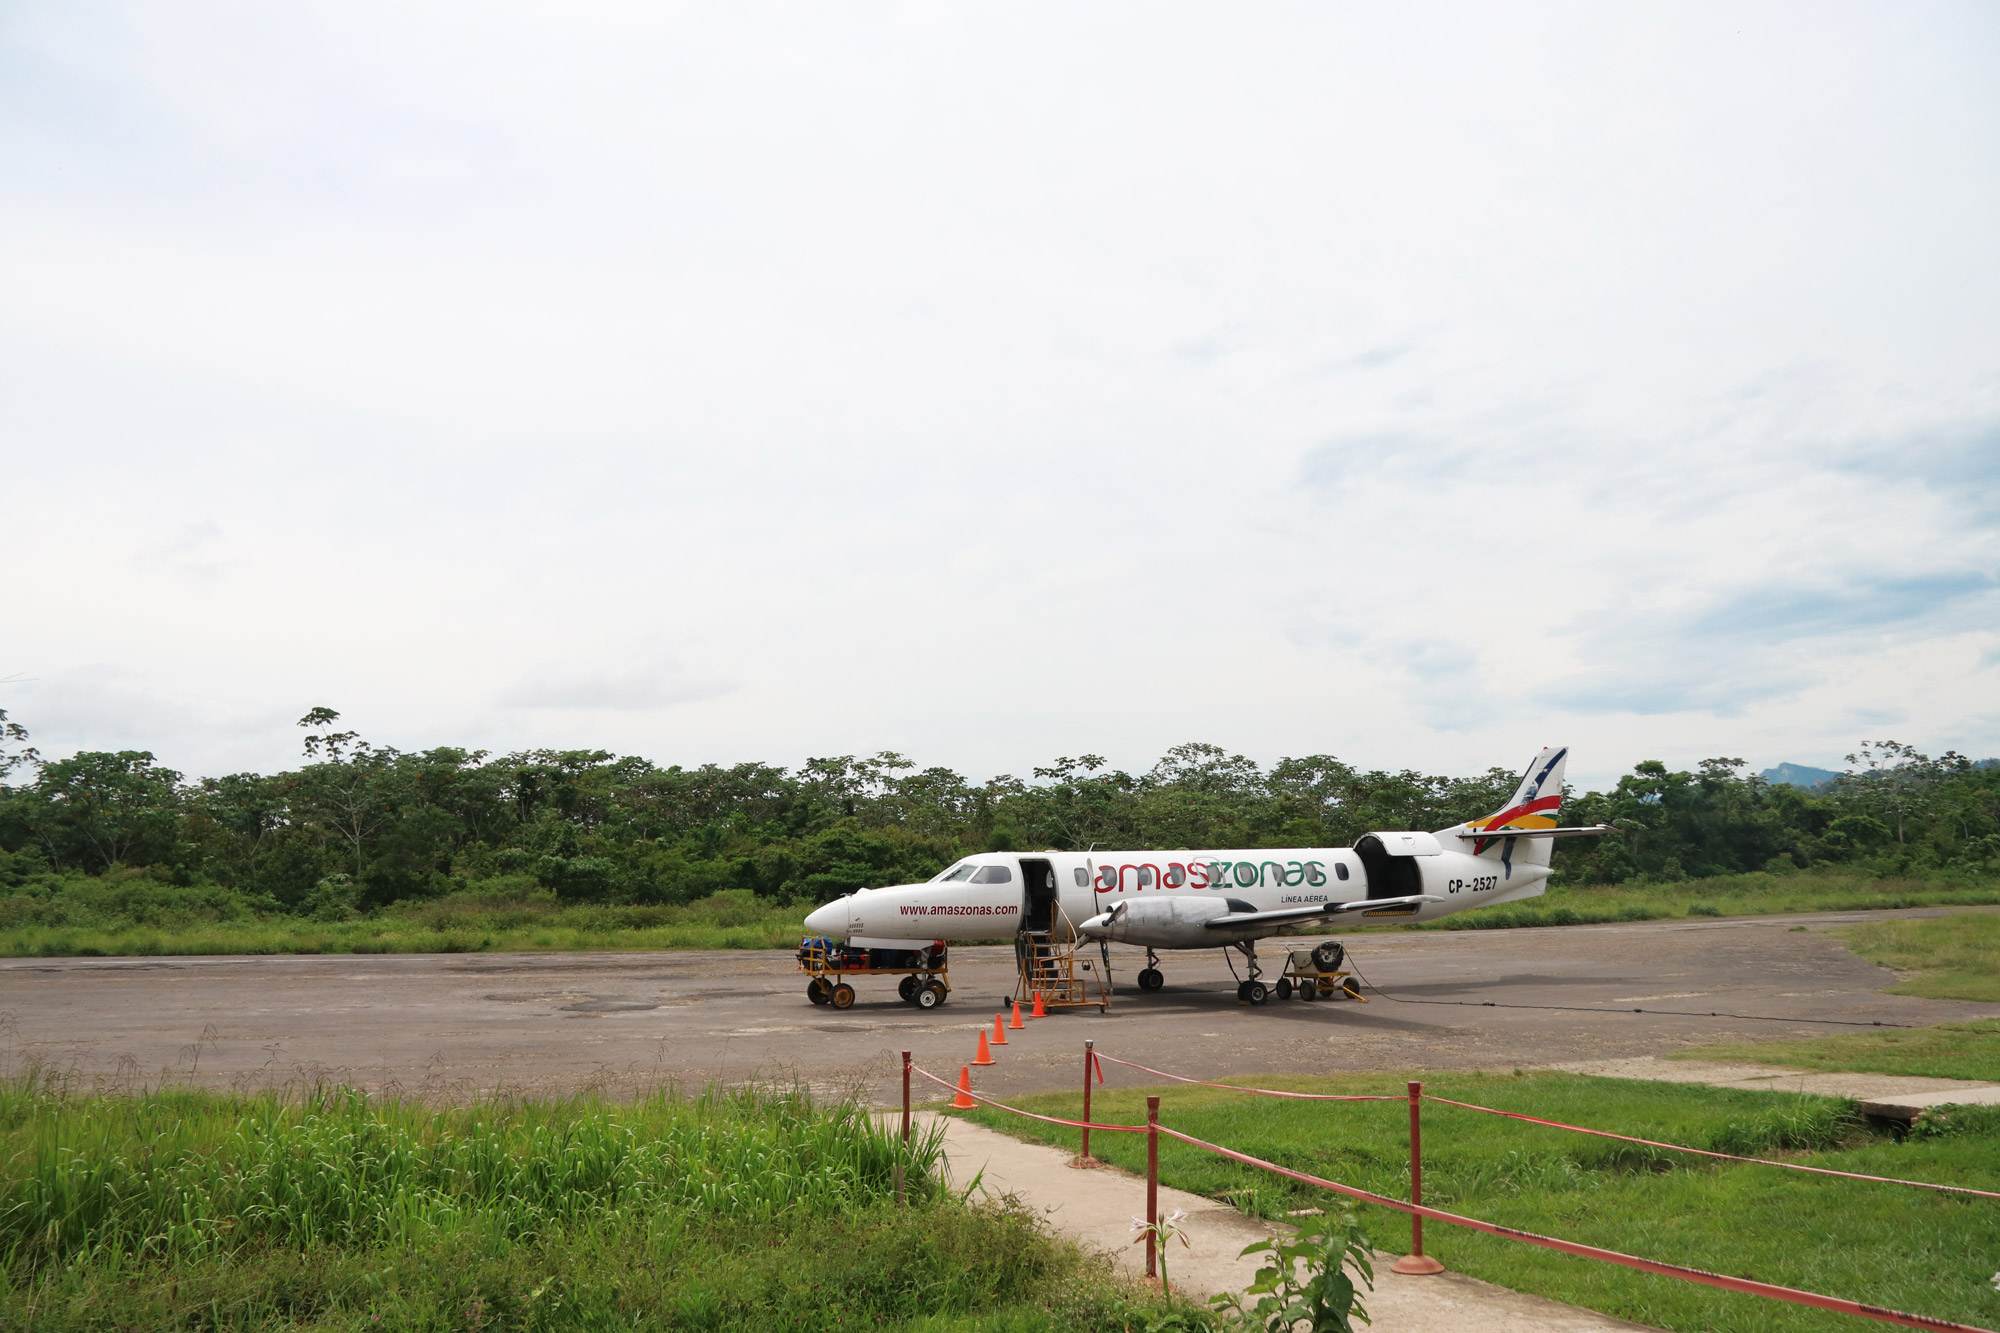 Reisverslag Bolivia: Einde van een spectaculaire reis - Vlucht met propellorvliegtuigje